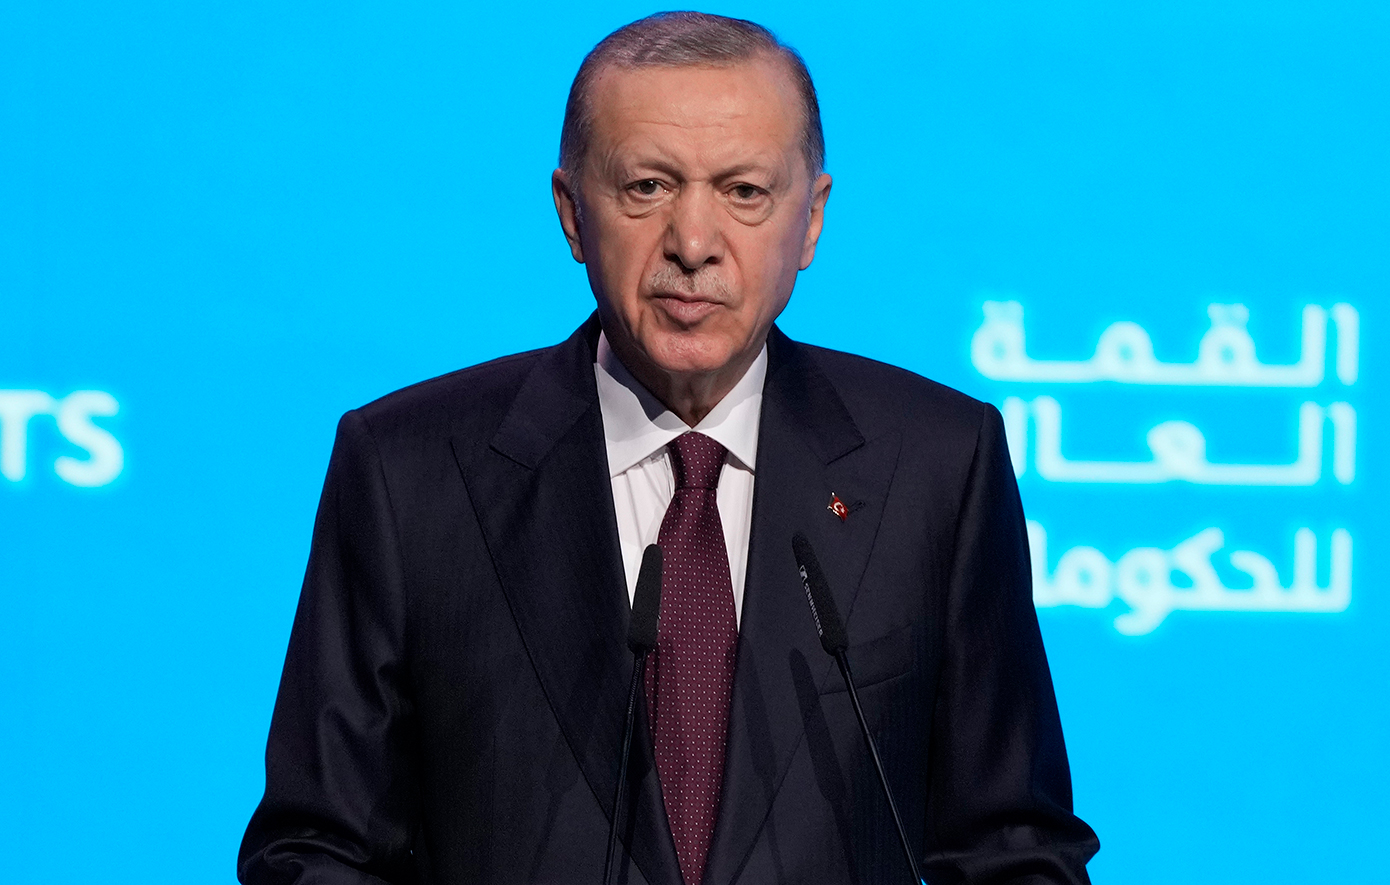 Συνάντηση Ερντογάν – Ντμπέιμπα στην Άγκυρα: Η Τουρκία έχει κοινά συμφέροντα με τη Λιβύη στην Ανατολική Μεσόγειο